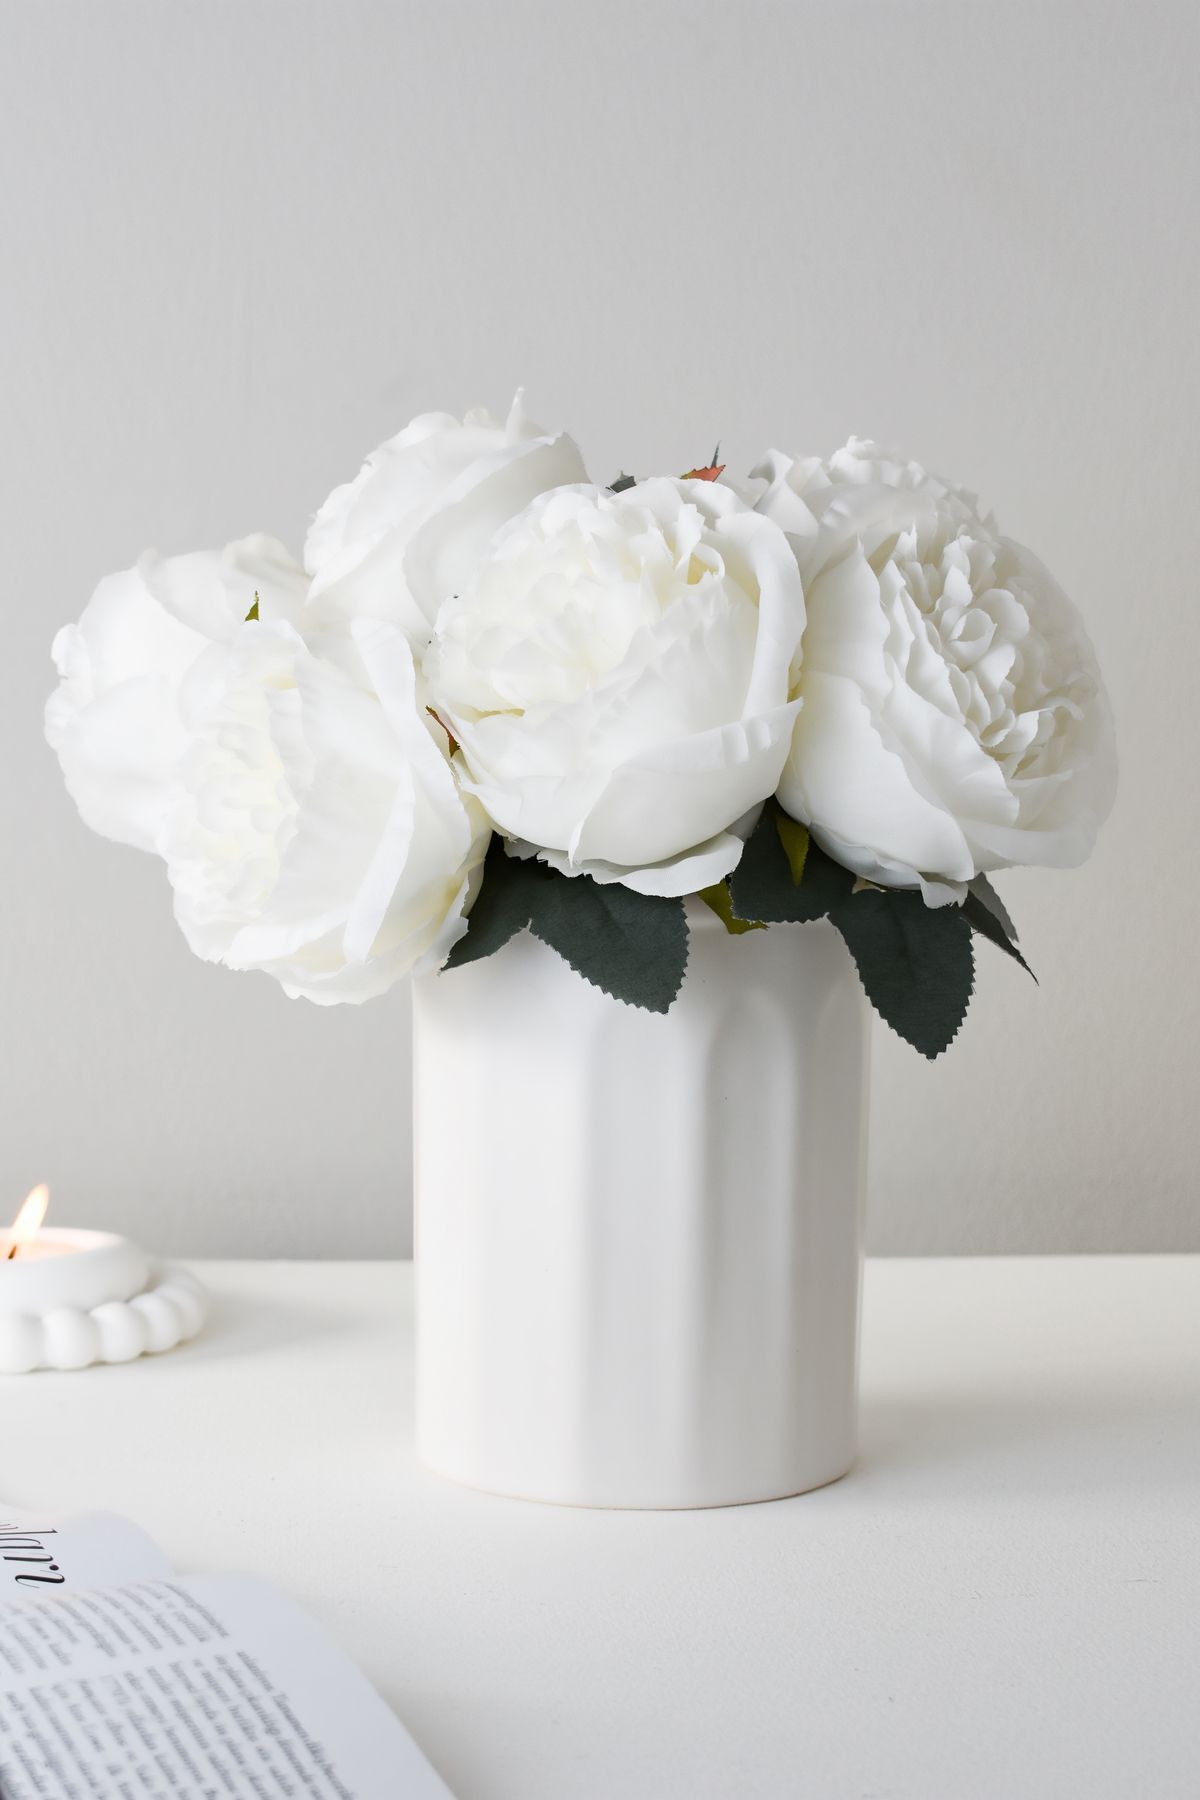 LALEZEN HOME Beyaz Seramik Vazo ( çiçekler dahil değildir)